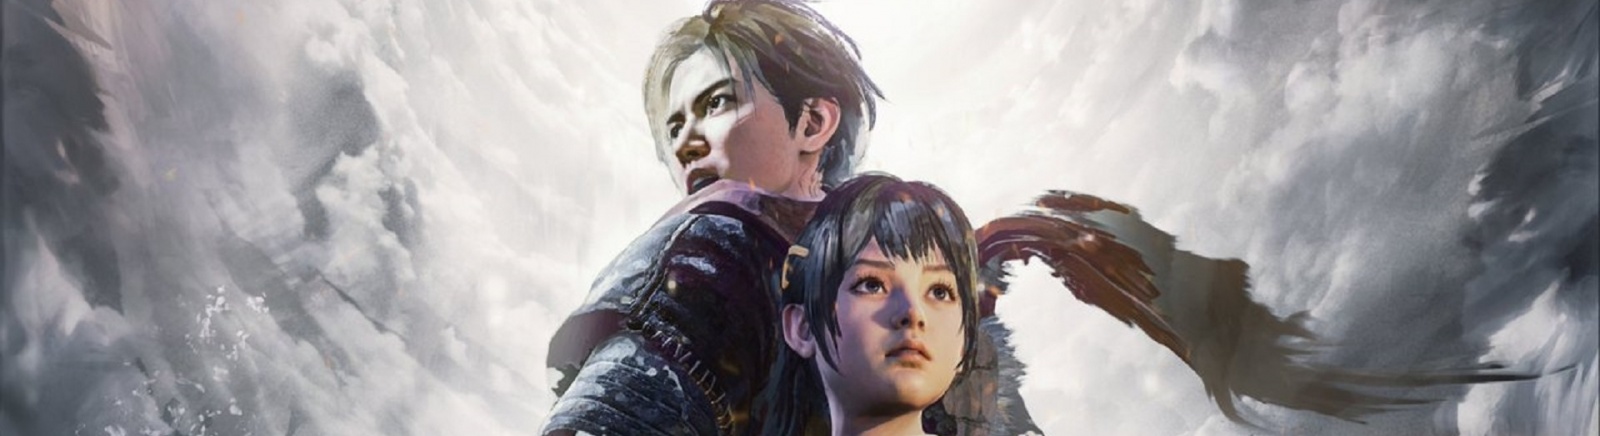 Дата выхода Xuan-Yuan Sword 7  на PC, PS4 и Xbox One в России и во всем мире